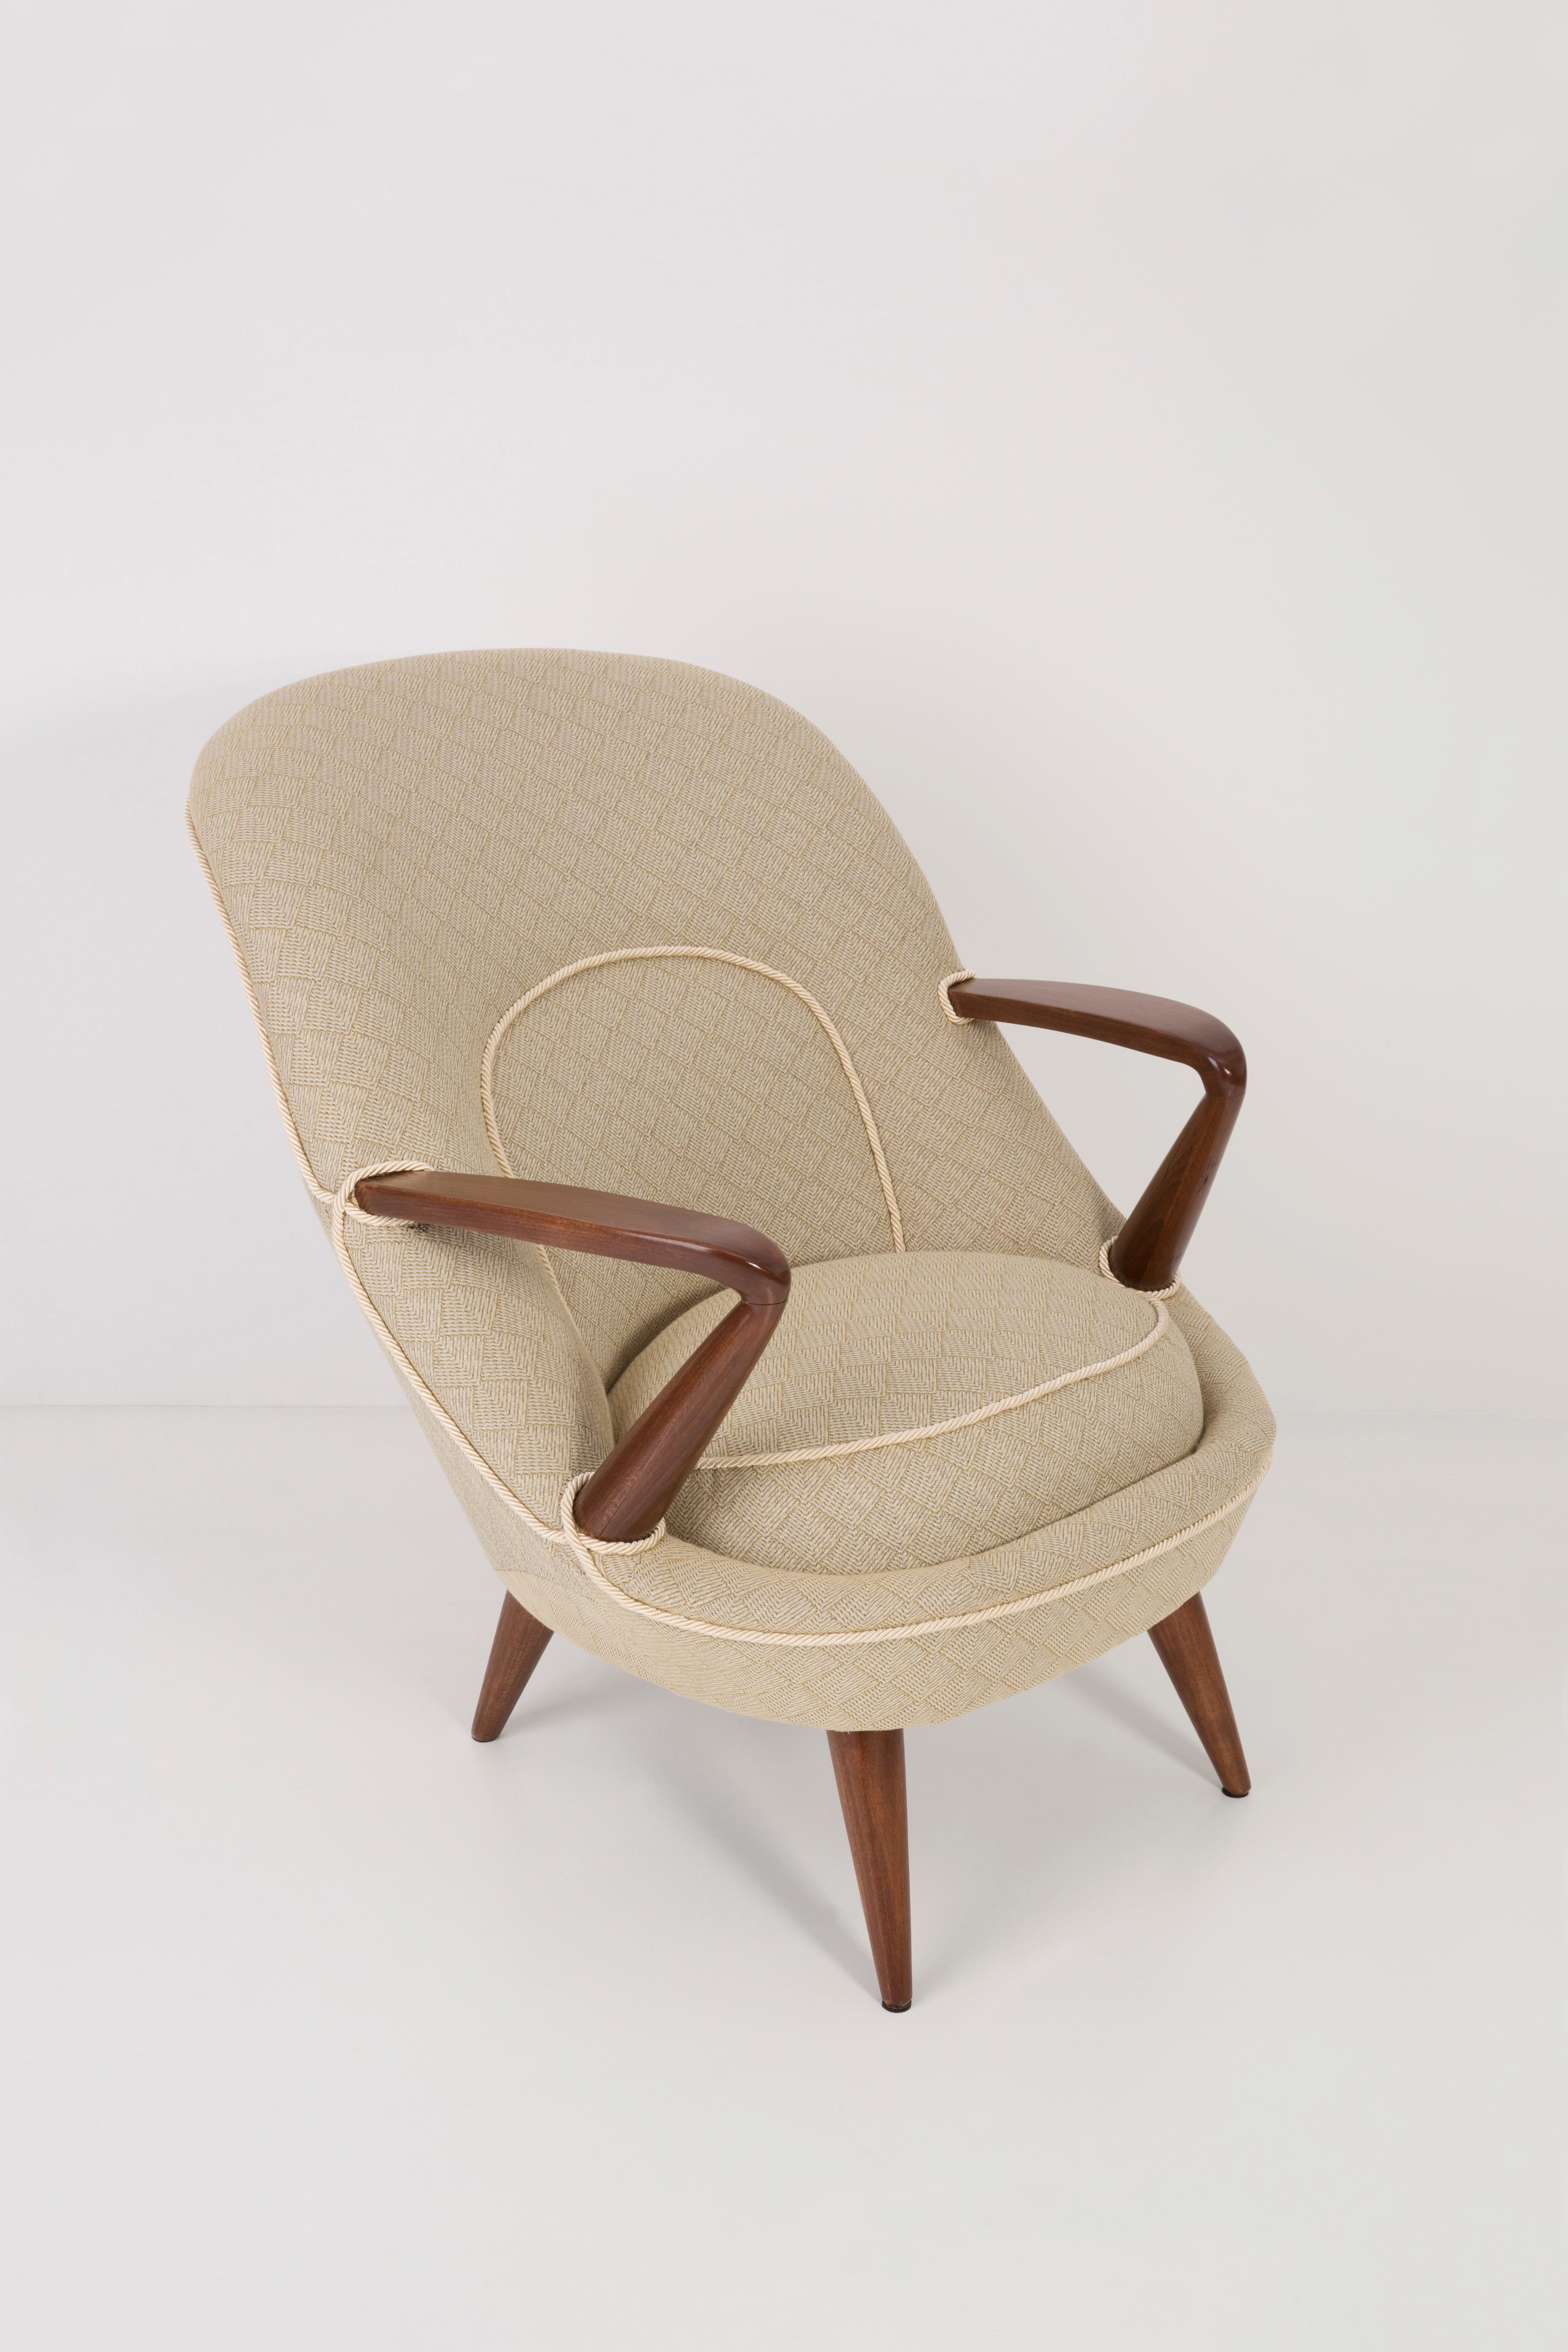 Äußerst seltener Sessel des Modells 345, der Mitte der 1950er Jahre von zwei Studenten der Innenarchitektur, Janina Jedrachowicz und Konrad Racinowski, entworfen und kurzzeitig von Poznanskie Zaklady Meblowe produziert wurde.
Die Struktur der